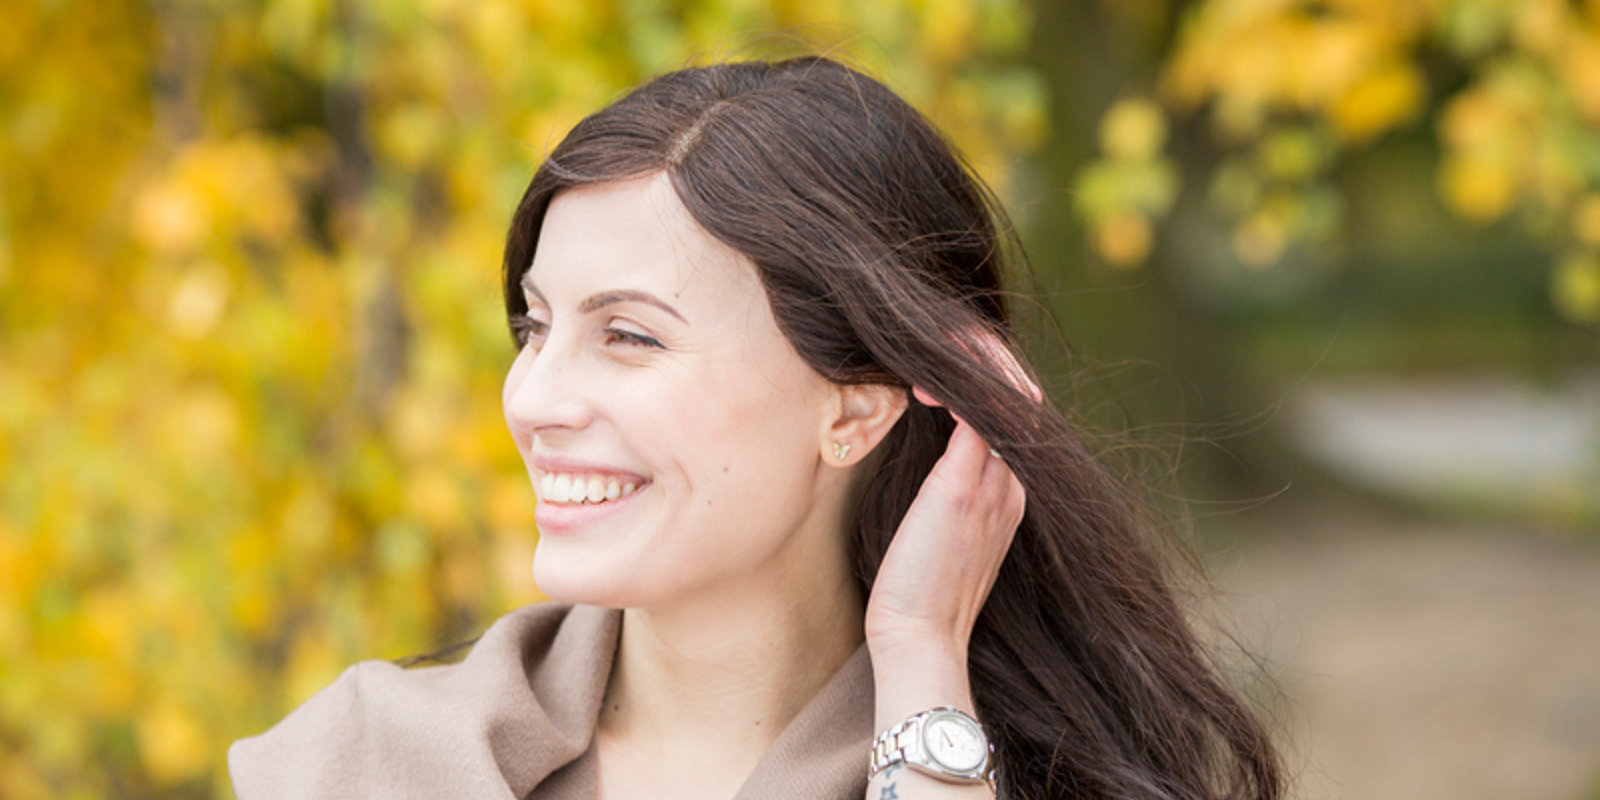 Julia, som har alopeci, skjuler hårtapet med en mørk parykk laget av norsk donorhår